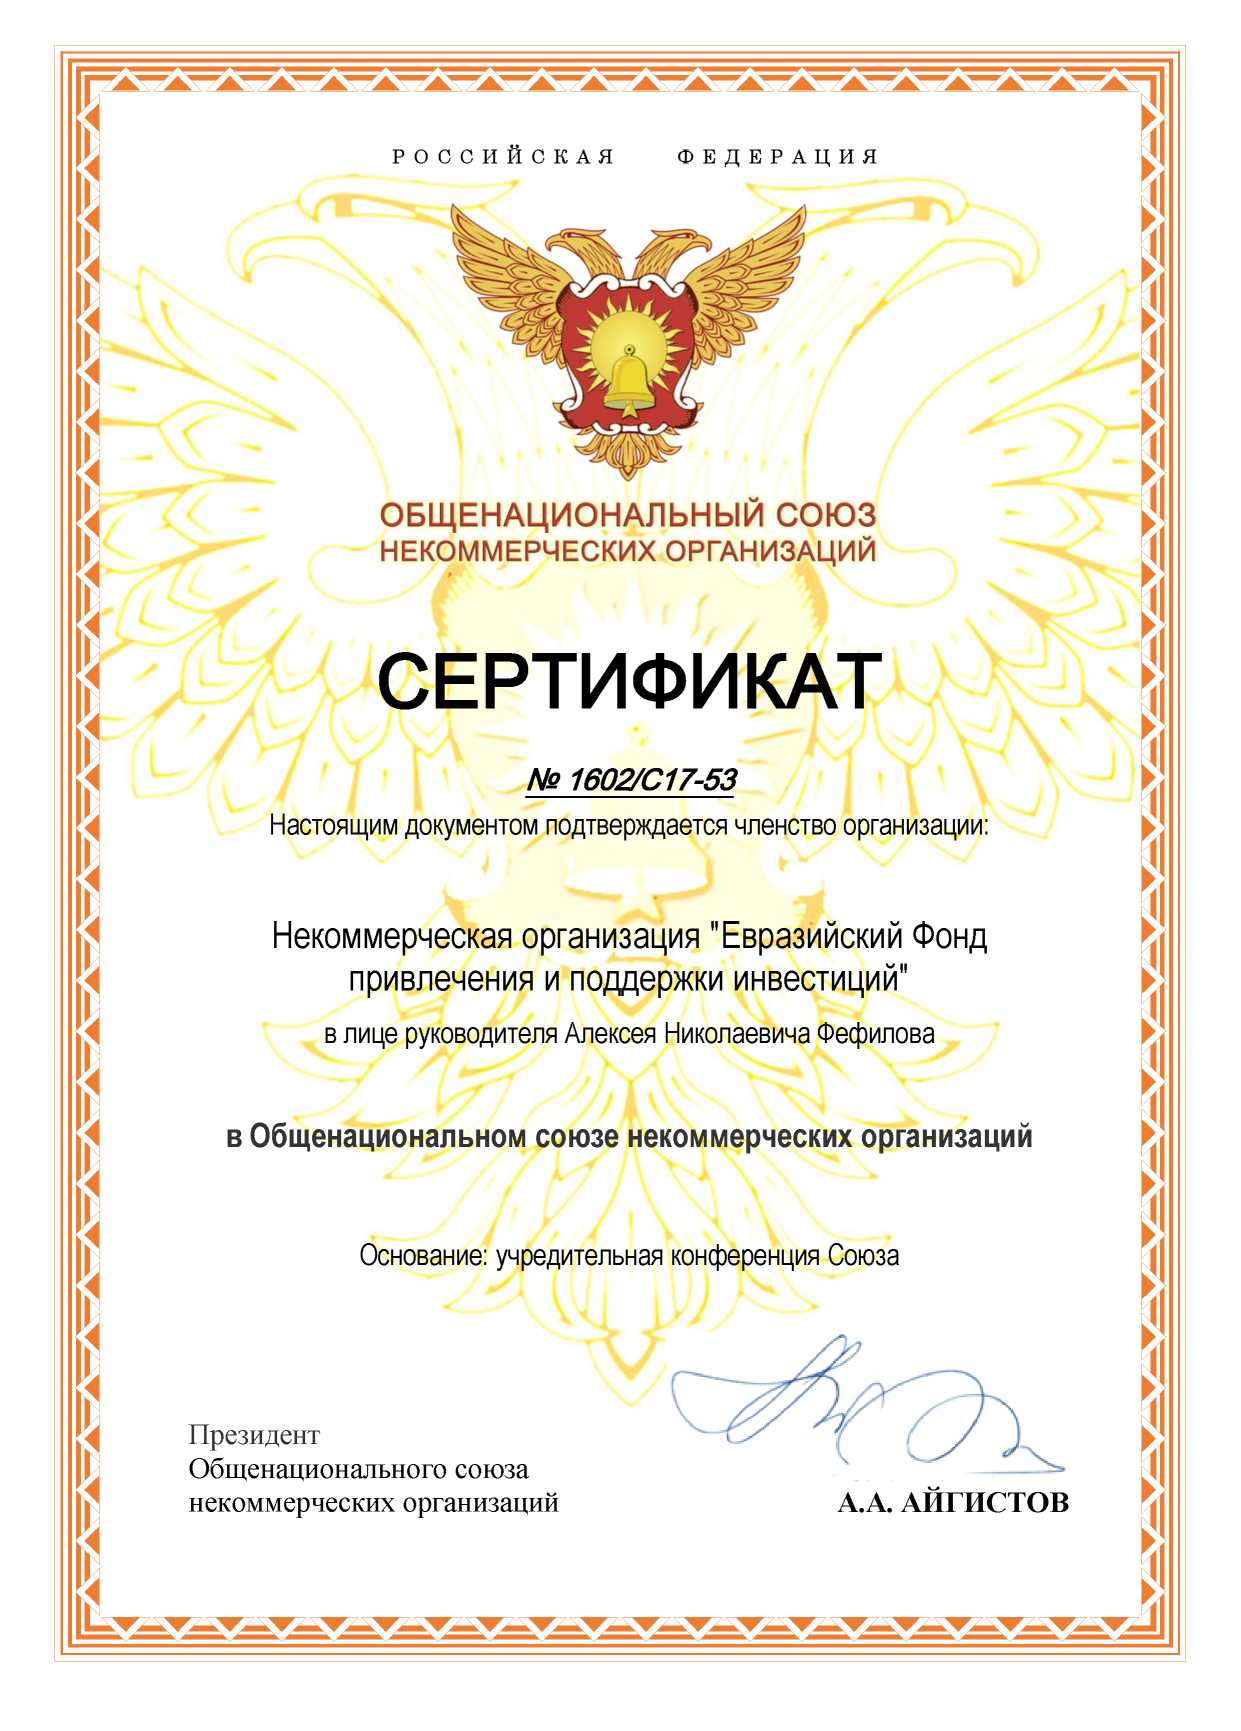 Сертификат участника Общенационального союза НКО РФ